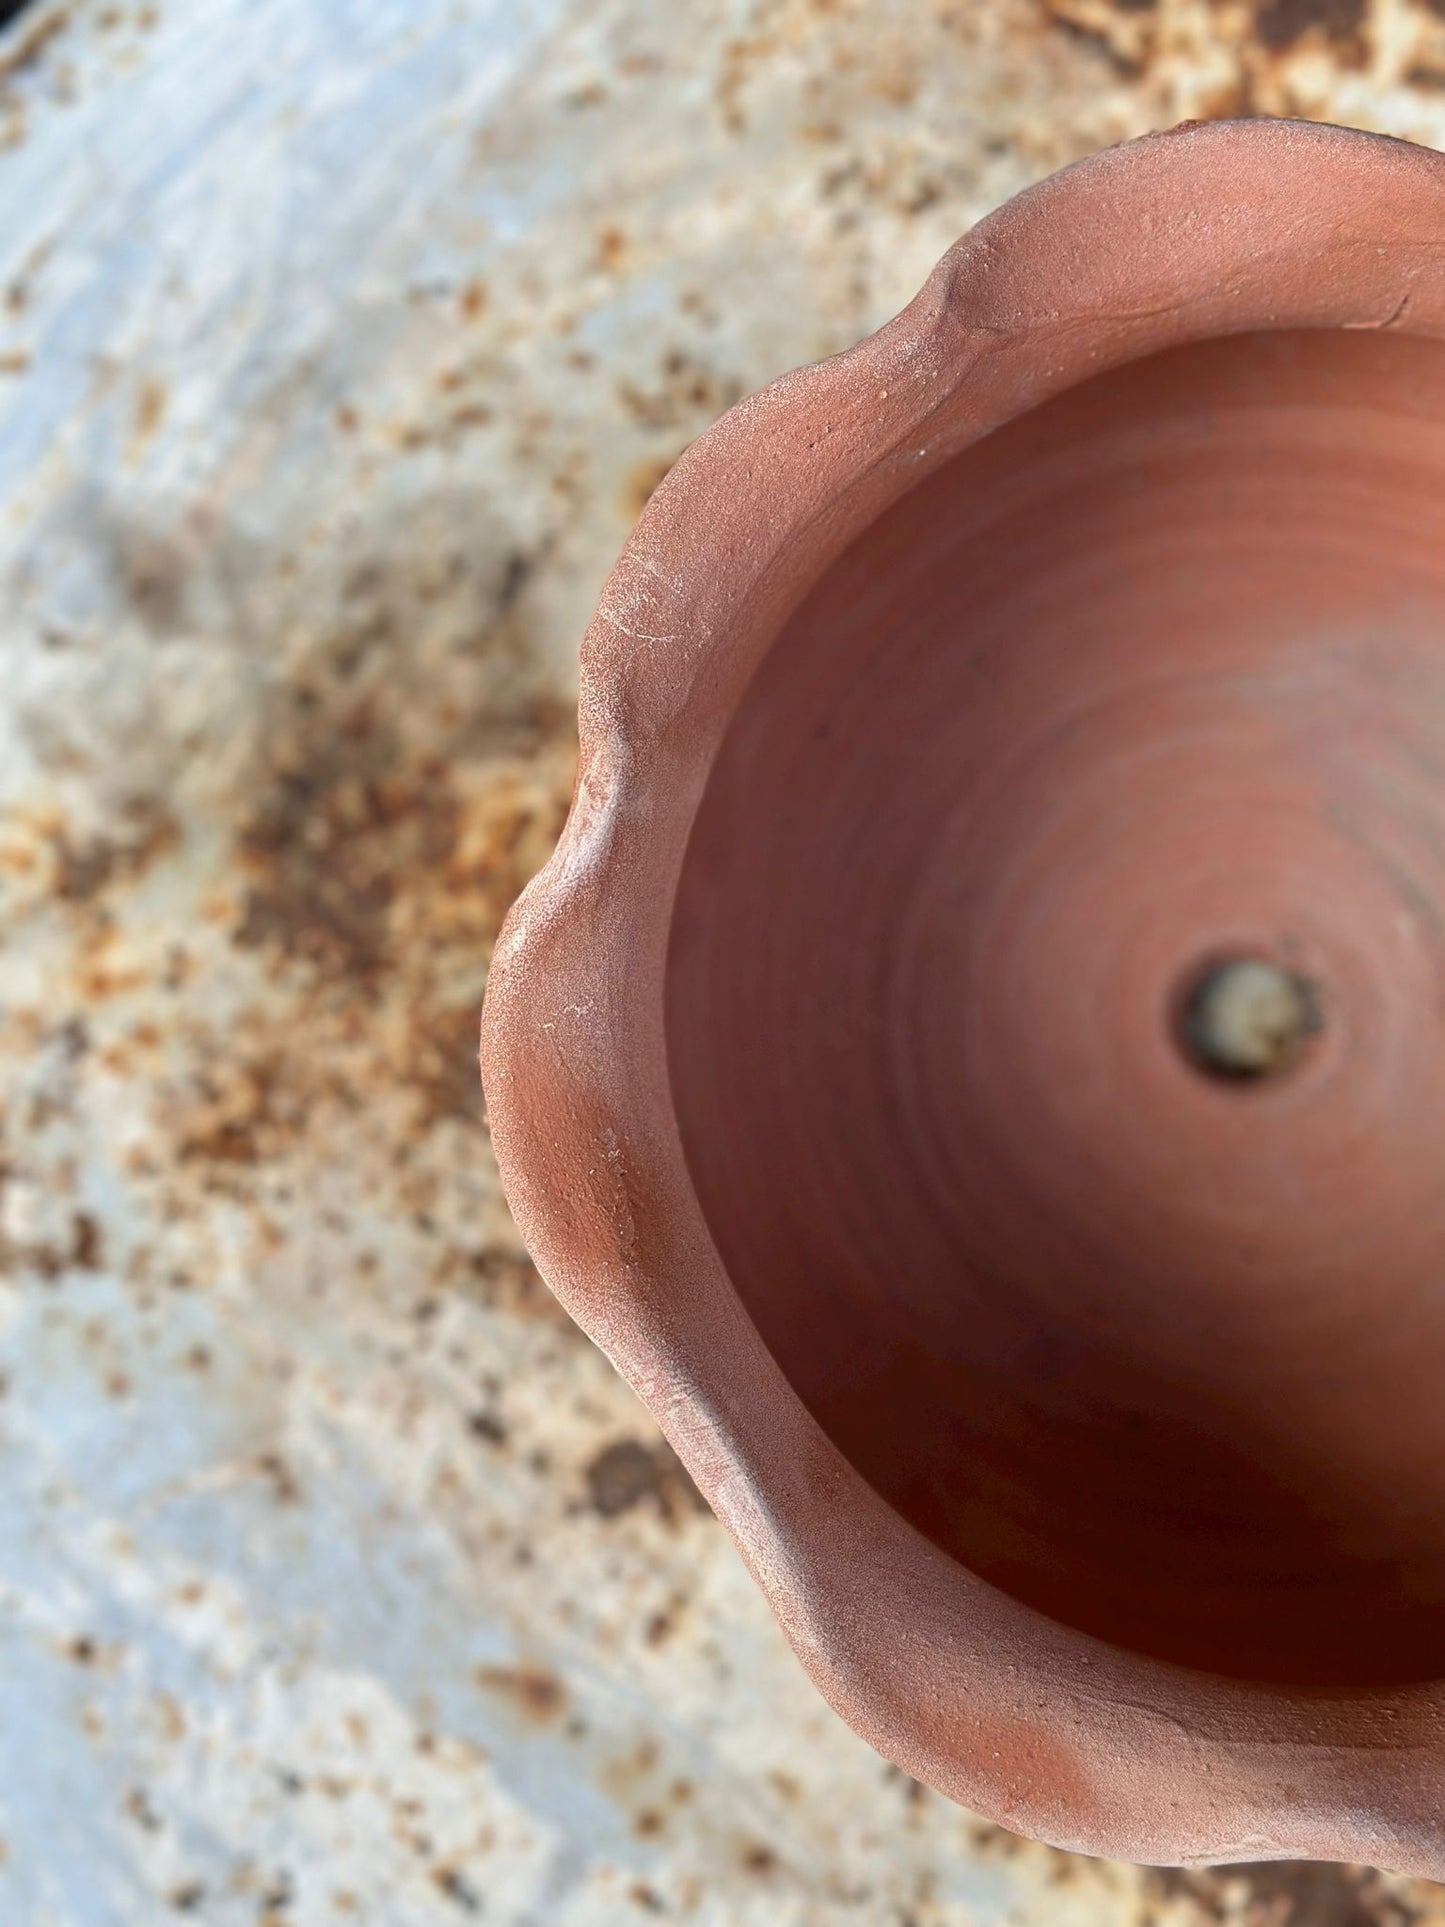 Handmade Terracotta Wavy Pot - Small